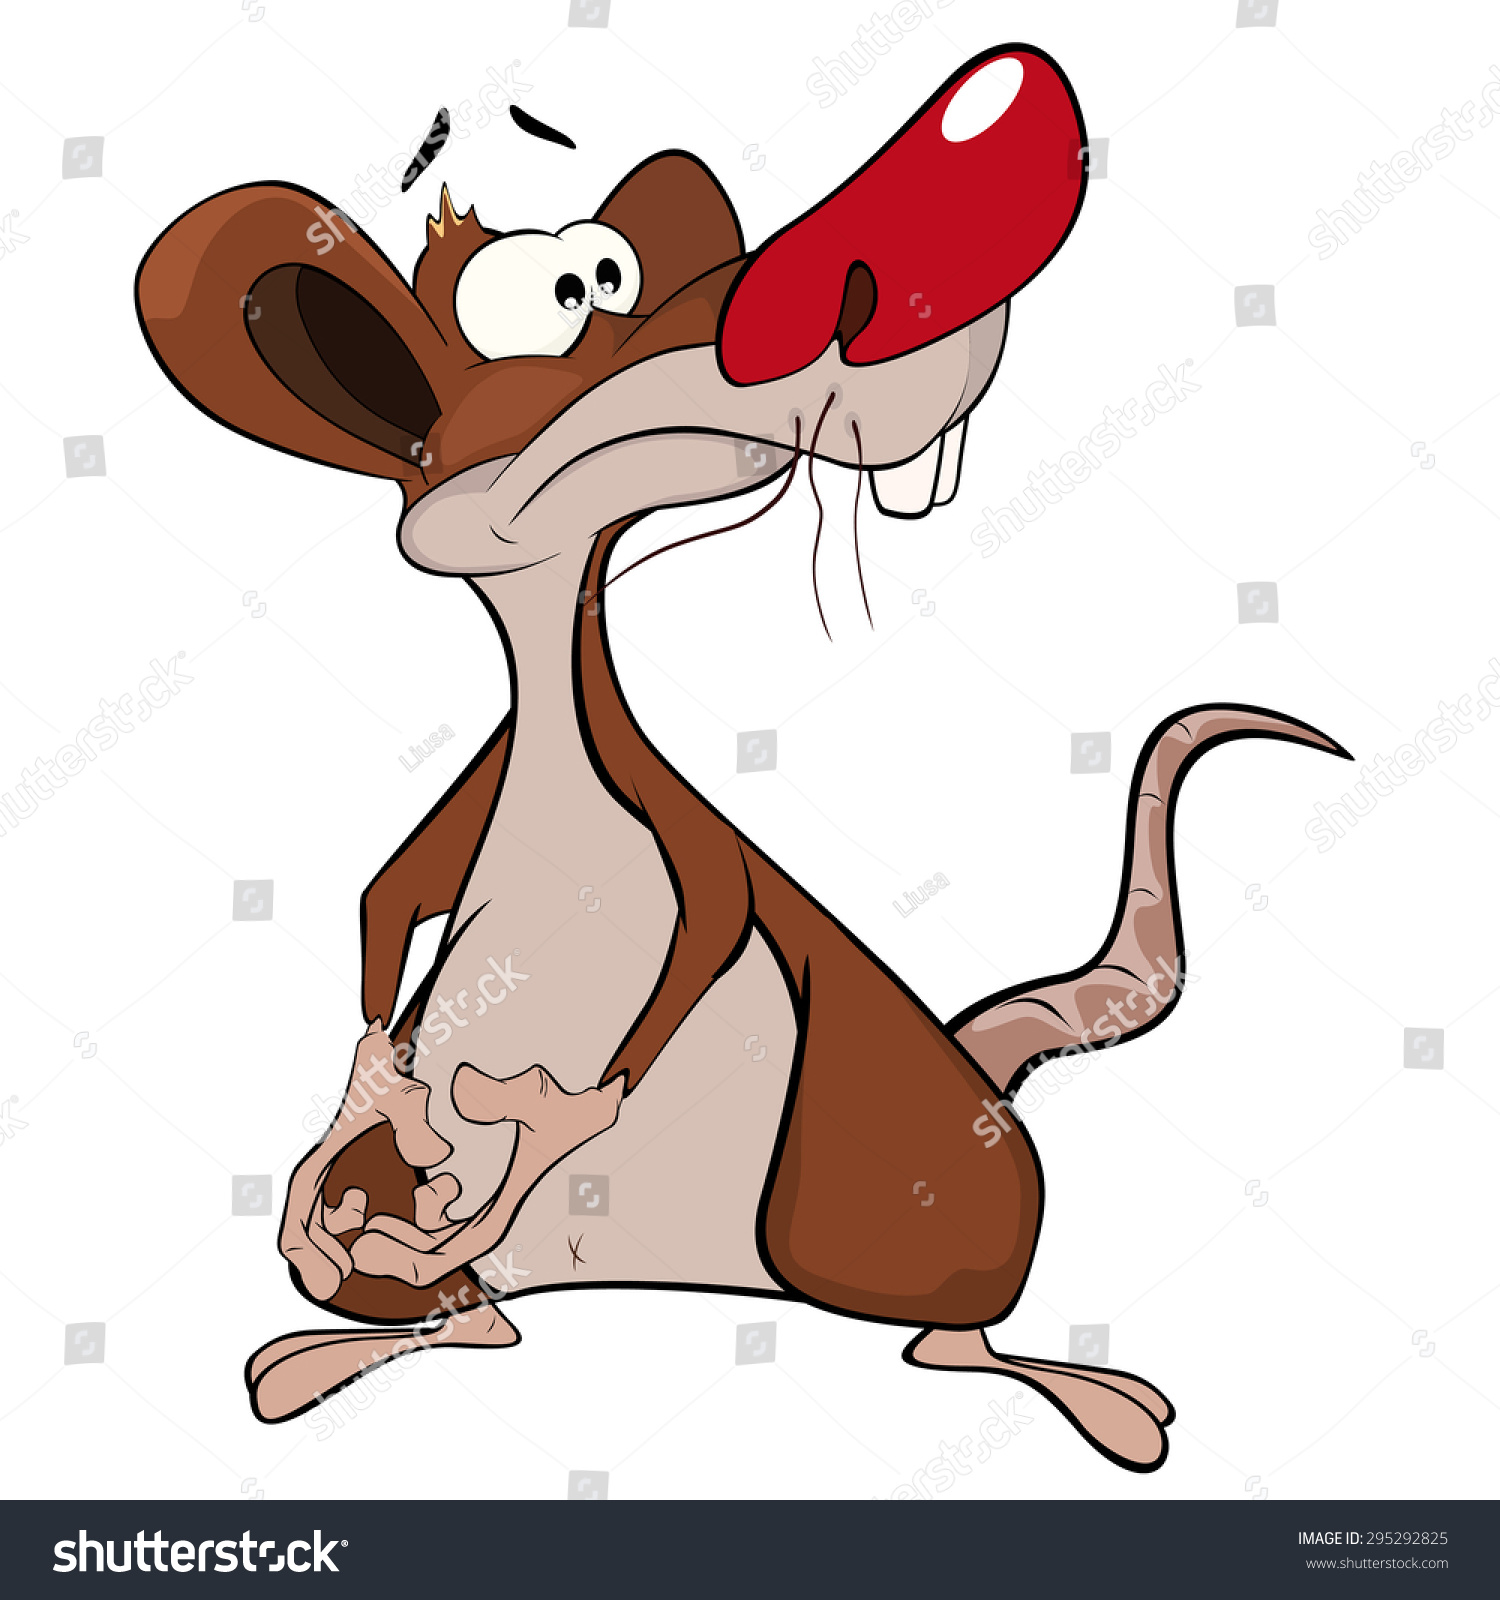 Cute Rat Vector Illustration. Cartoon - 295292825 : Shutterstock